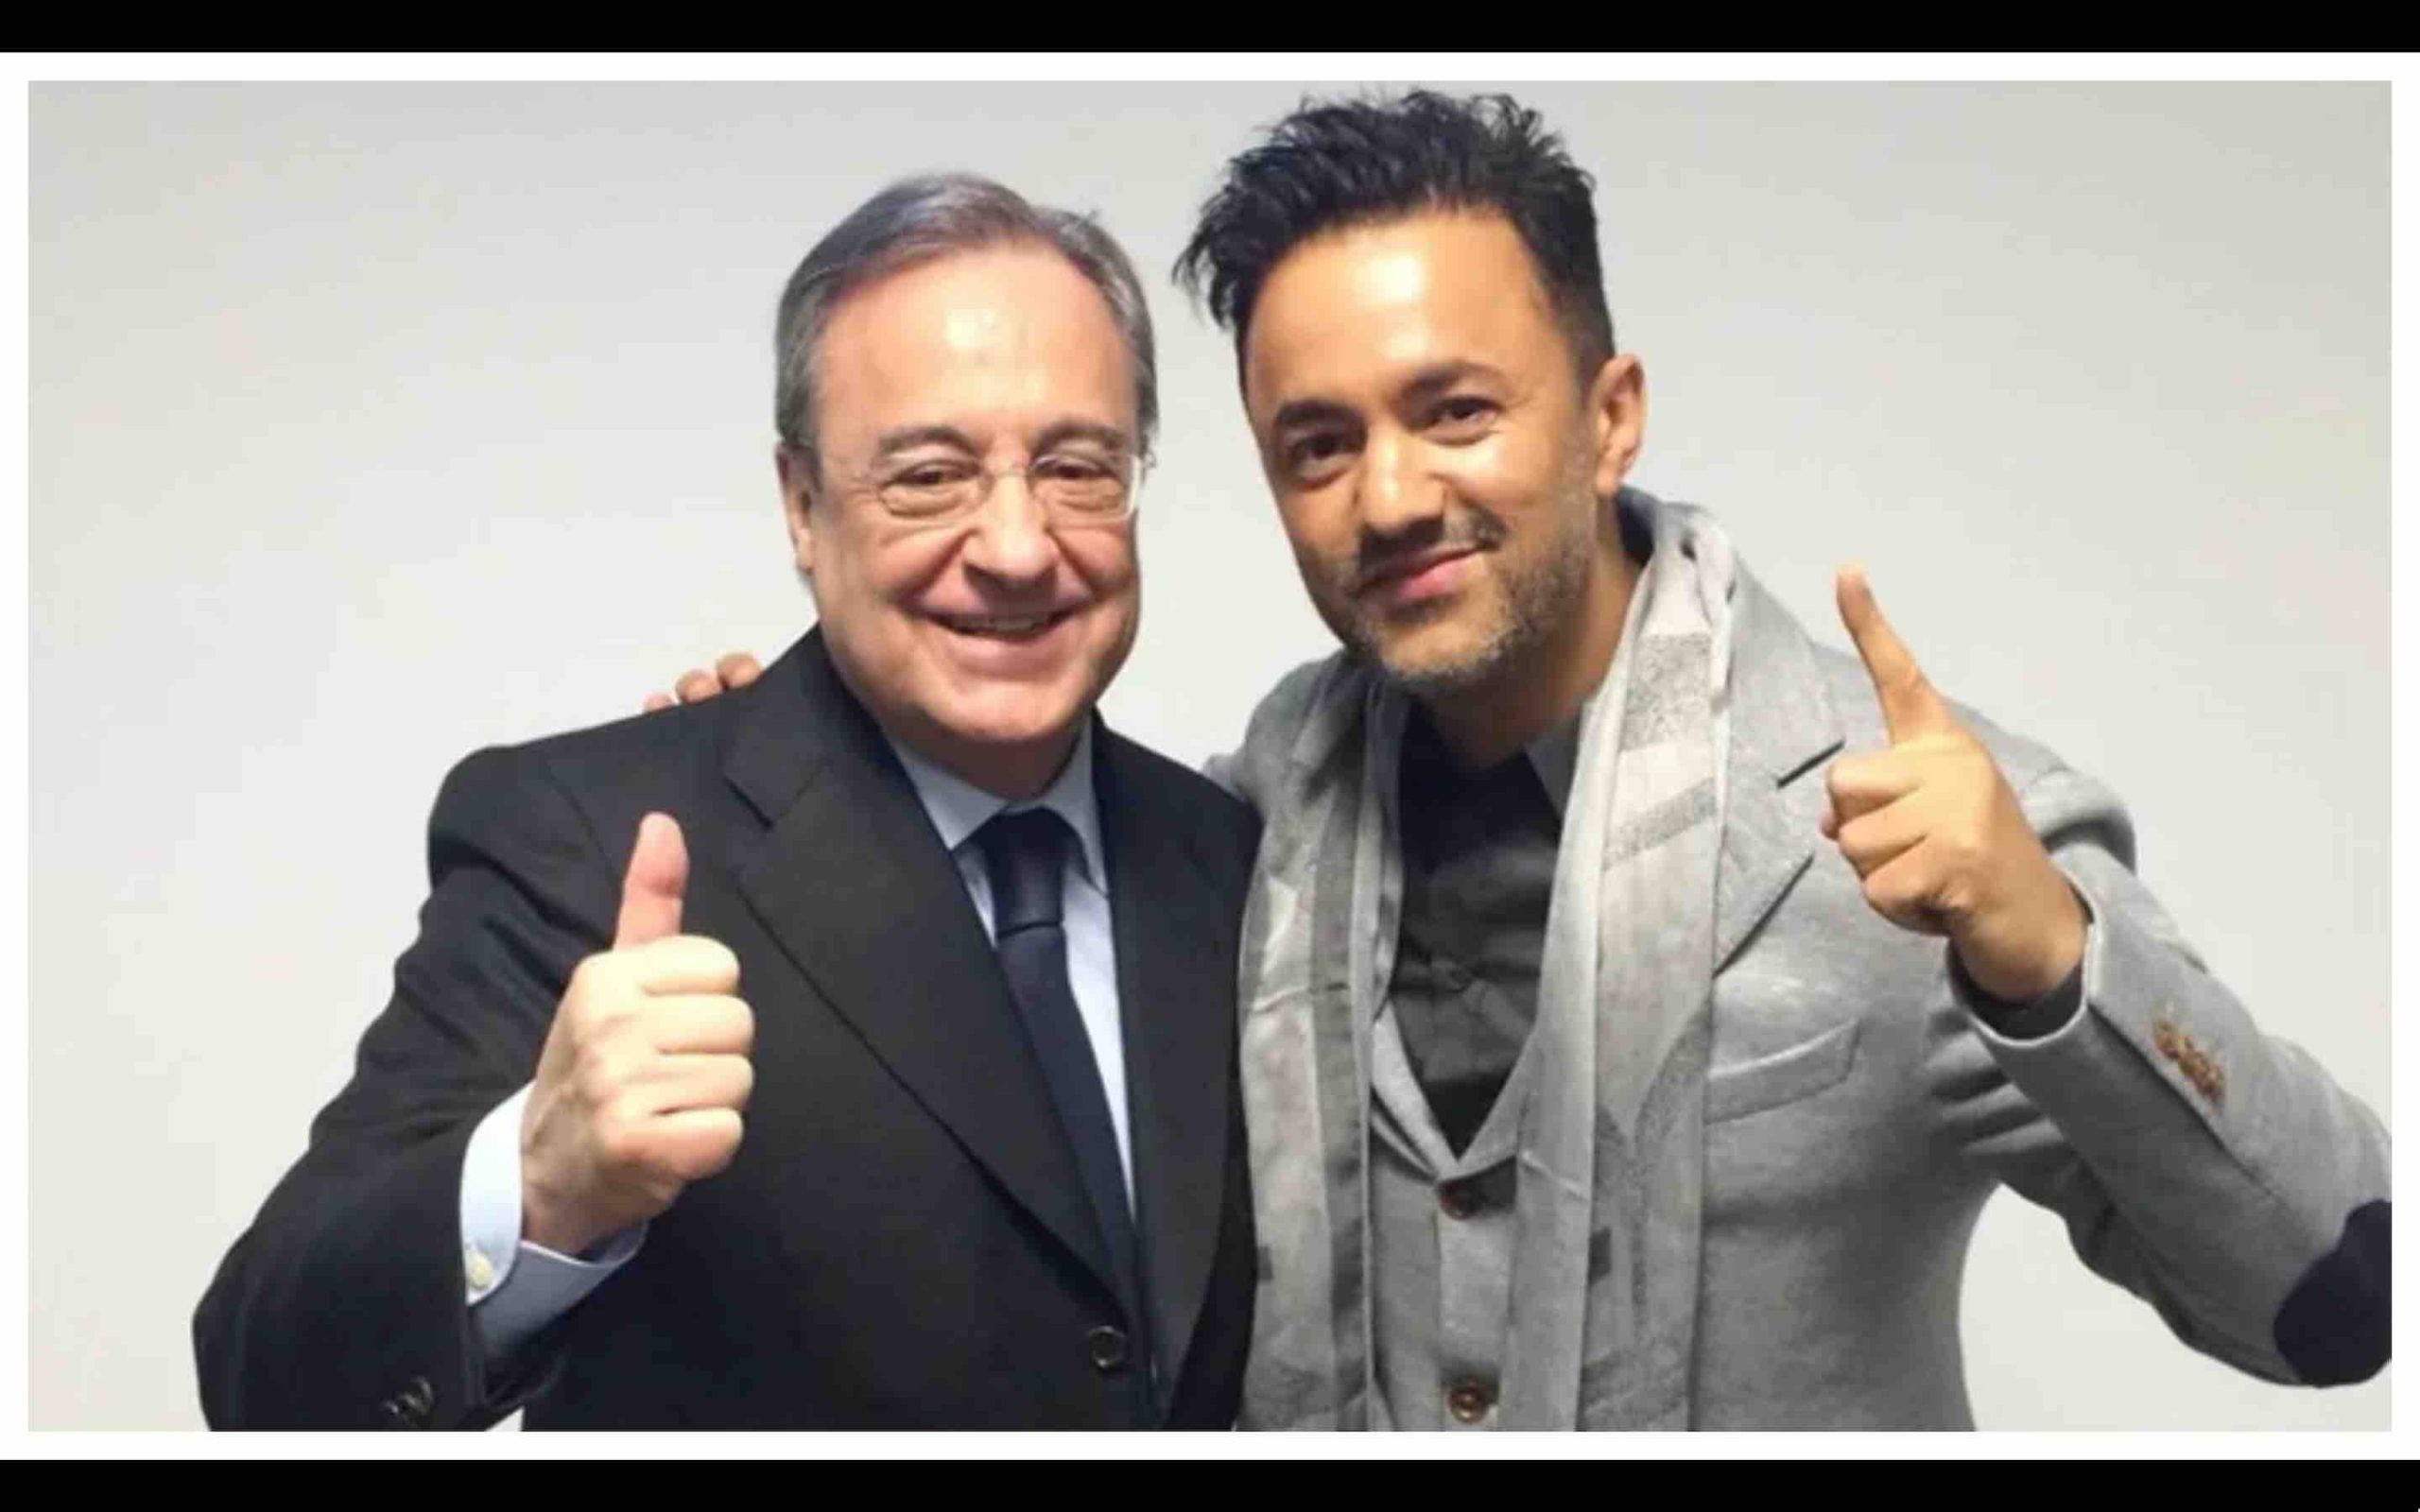 Le président du Real Madrid, Florentino Pérez, confie la réalisation du nouvel hymne du Real Madrid au producteur marocain RedOne